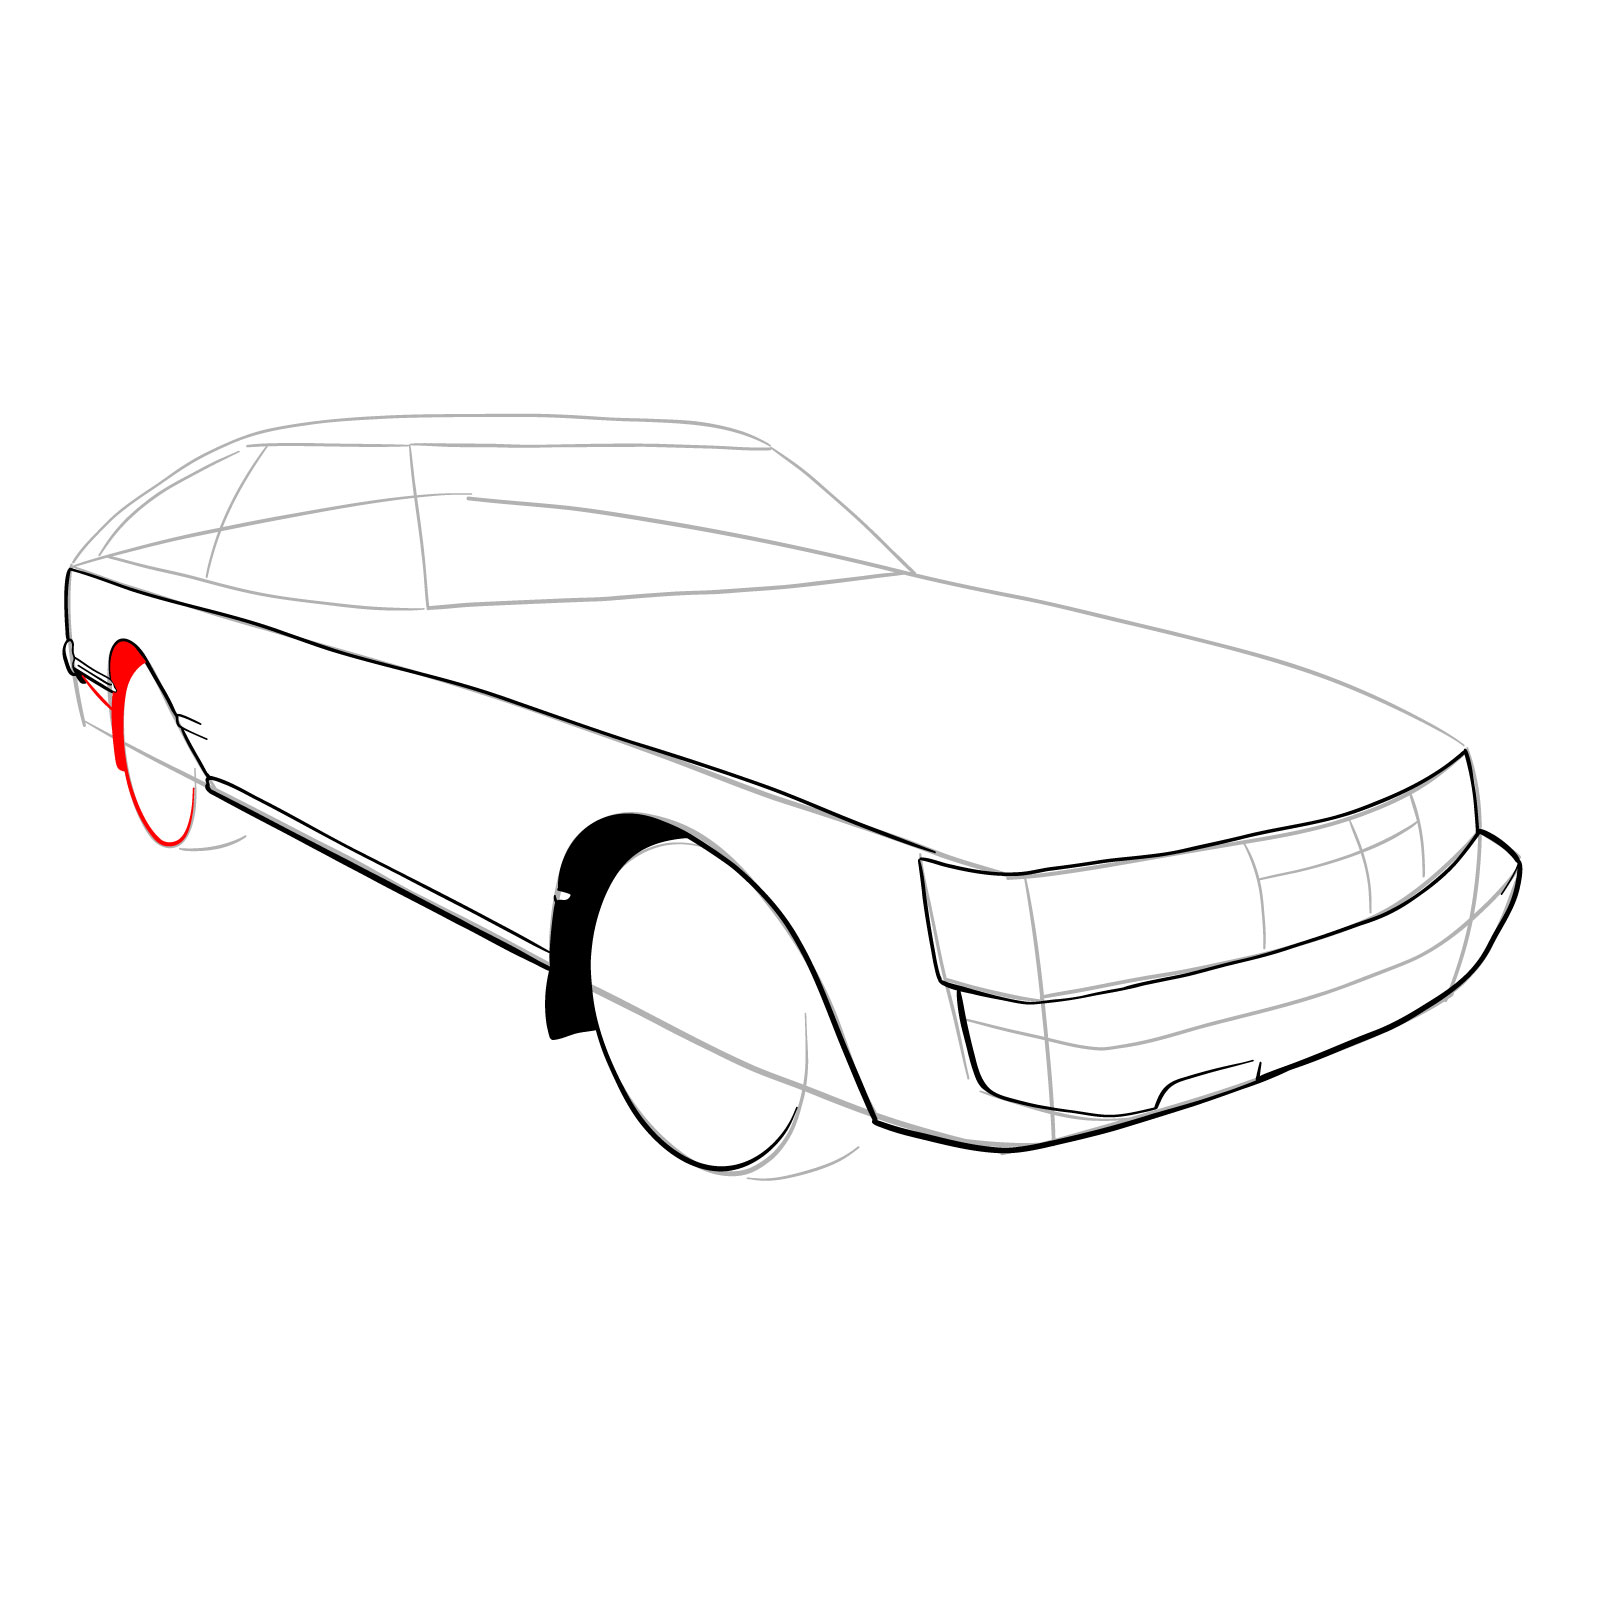 How to draw a 1979 Toyota Celica Supra Mk I Coupe - step 12